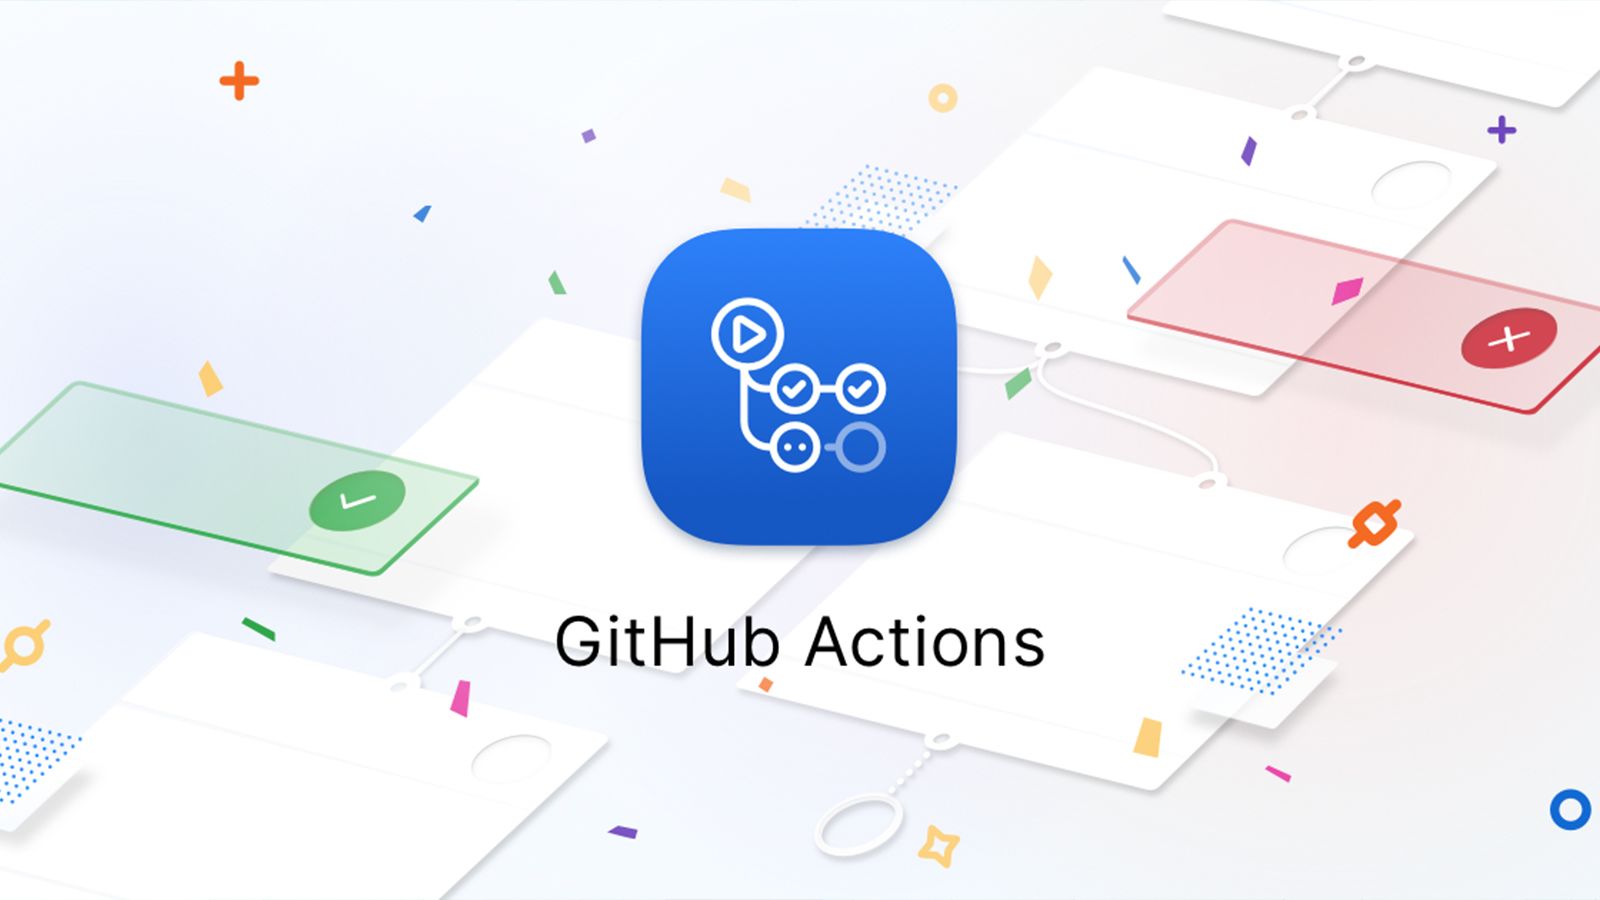 CI/CD with GitHub Actions